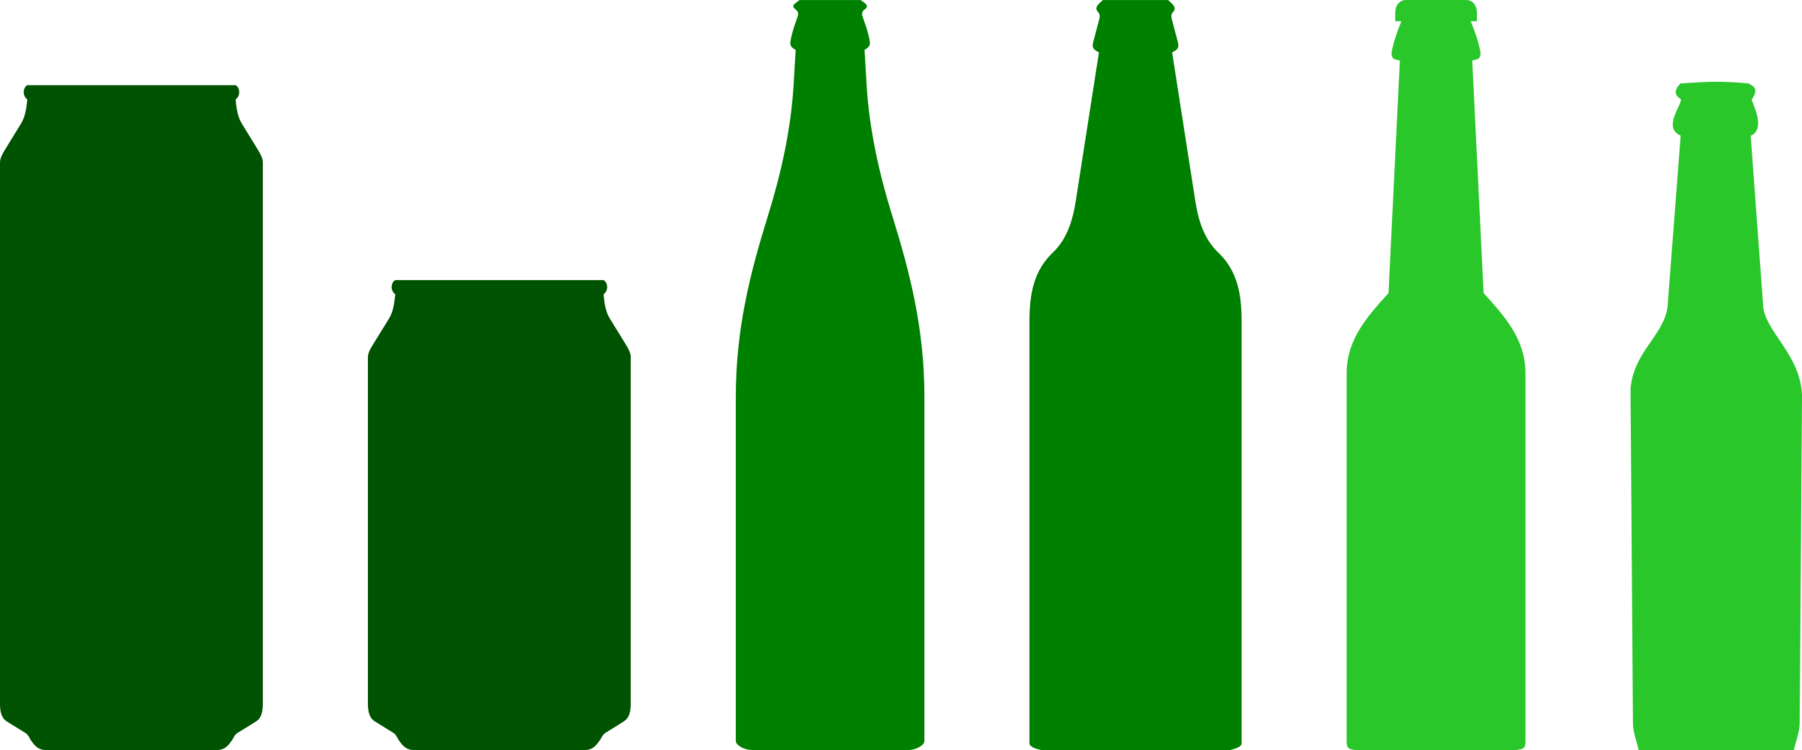 Beer Bottle,Glass Bottle,Green Vector Clipart.